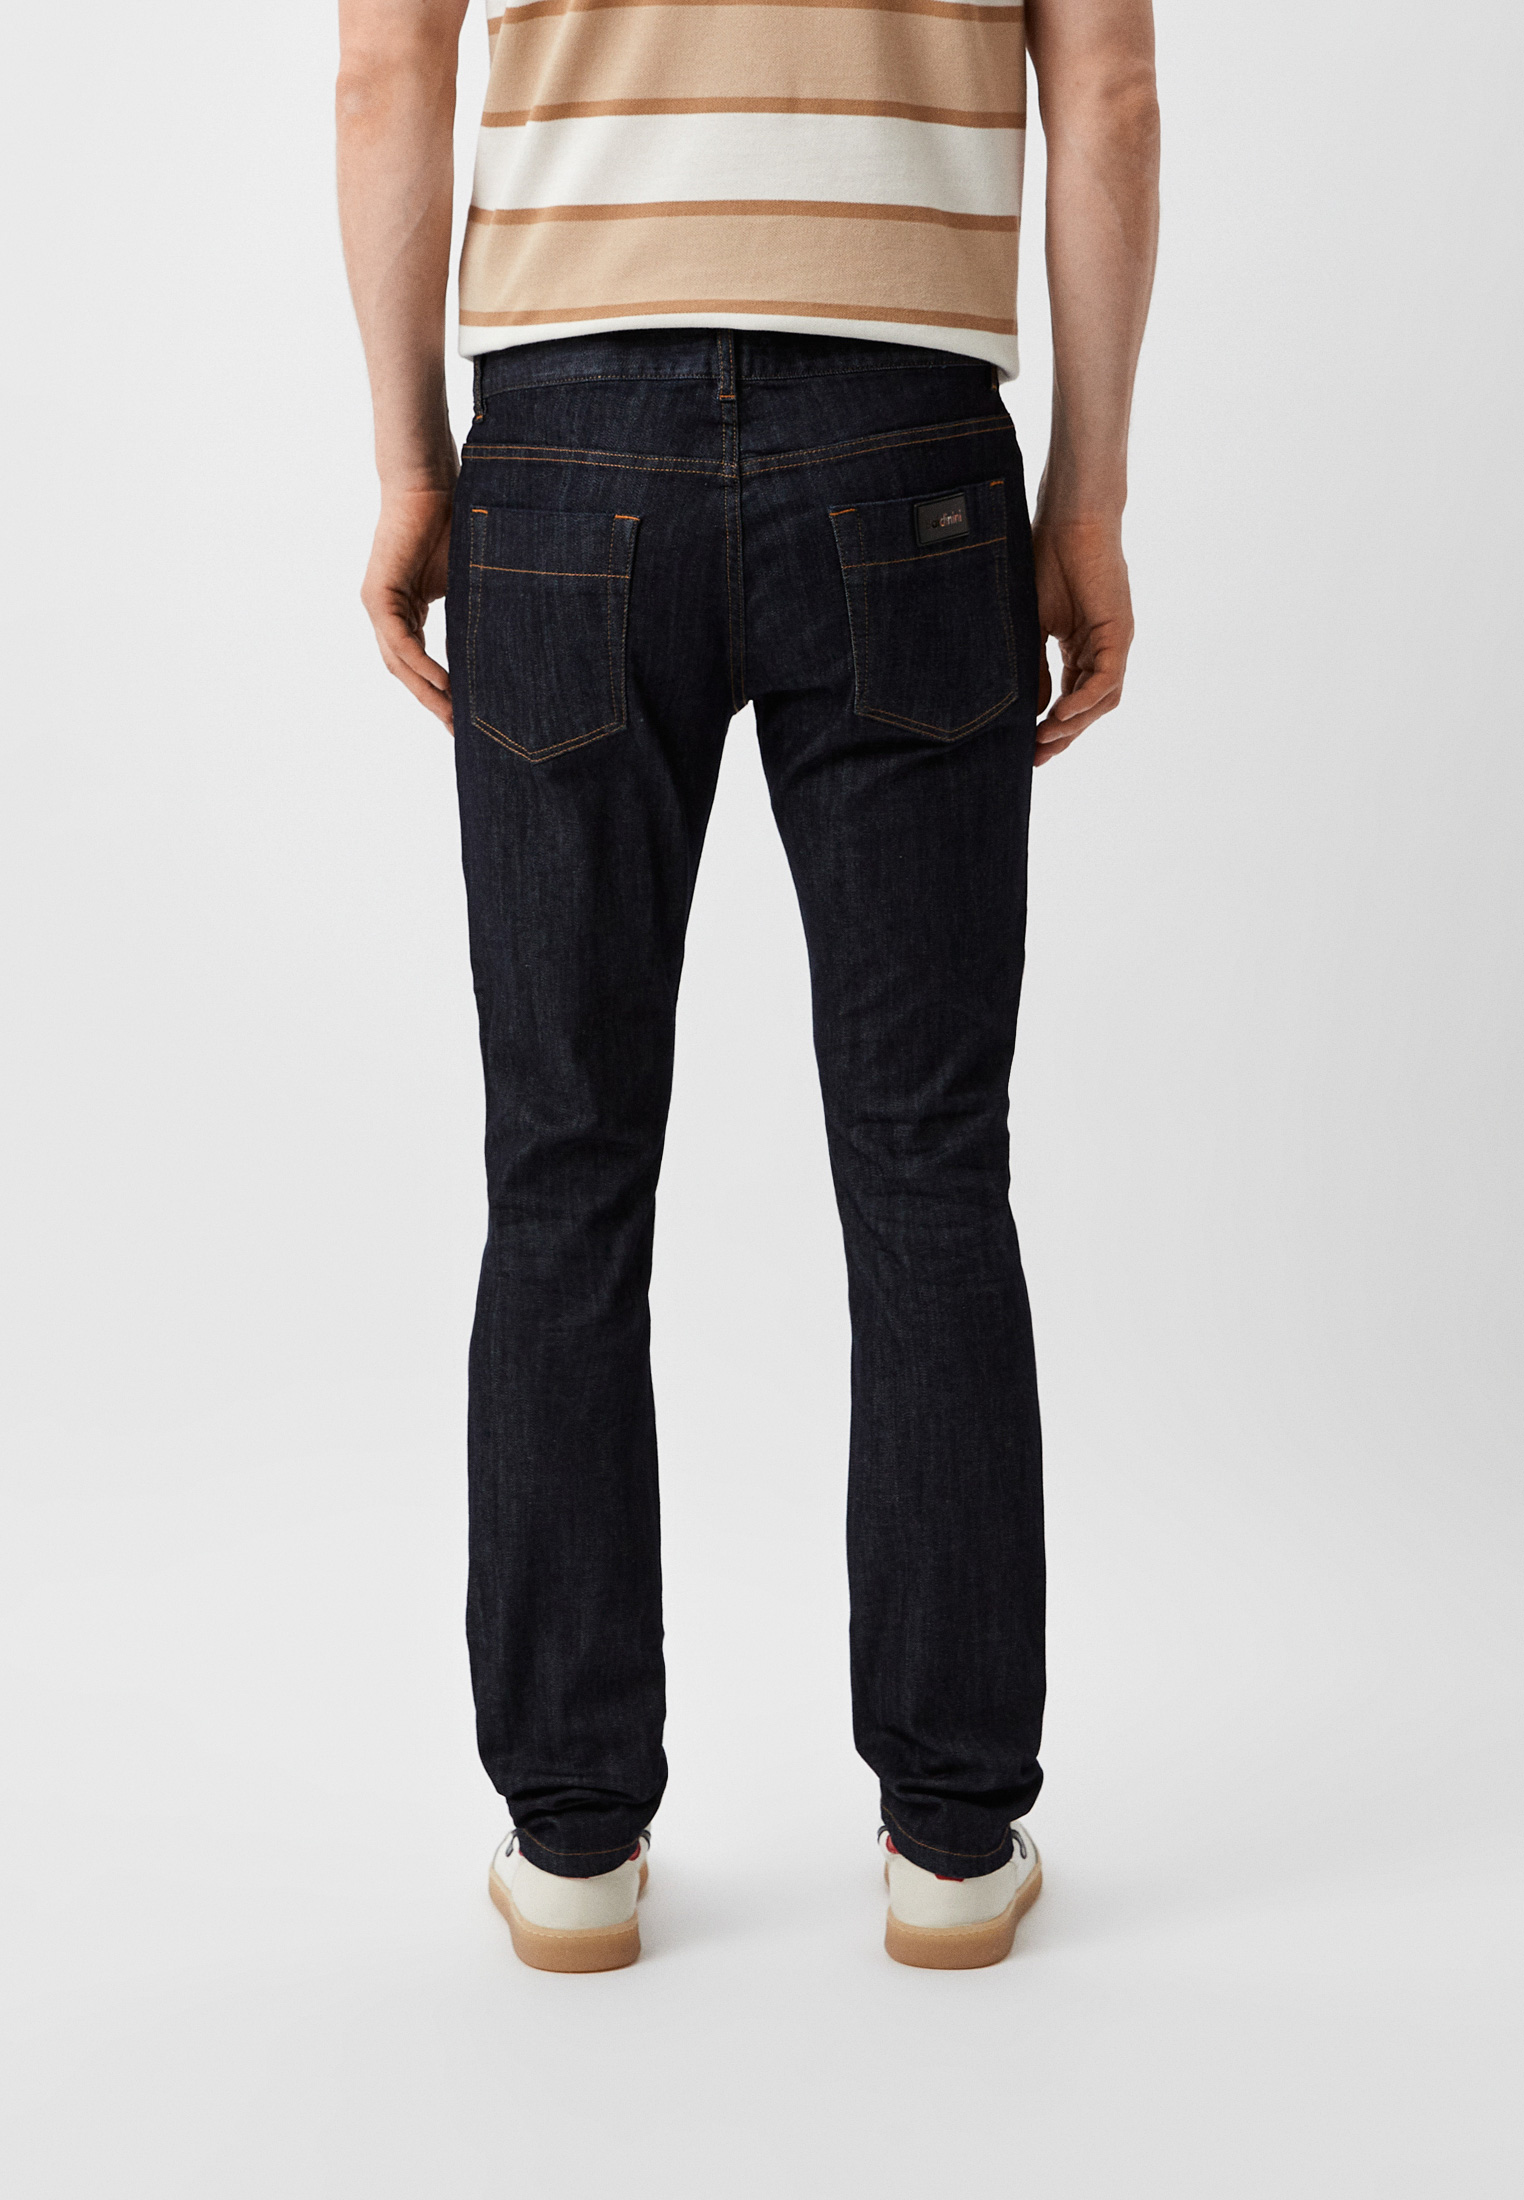 Мужские зауженные джинсы Baldinini (Балдинини) J1004P10: изображение 3